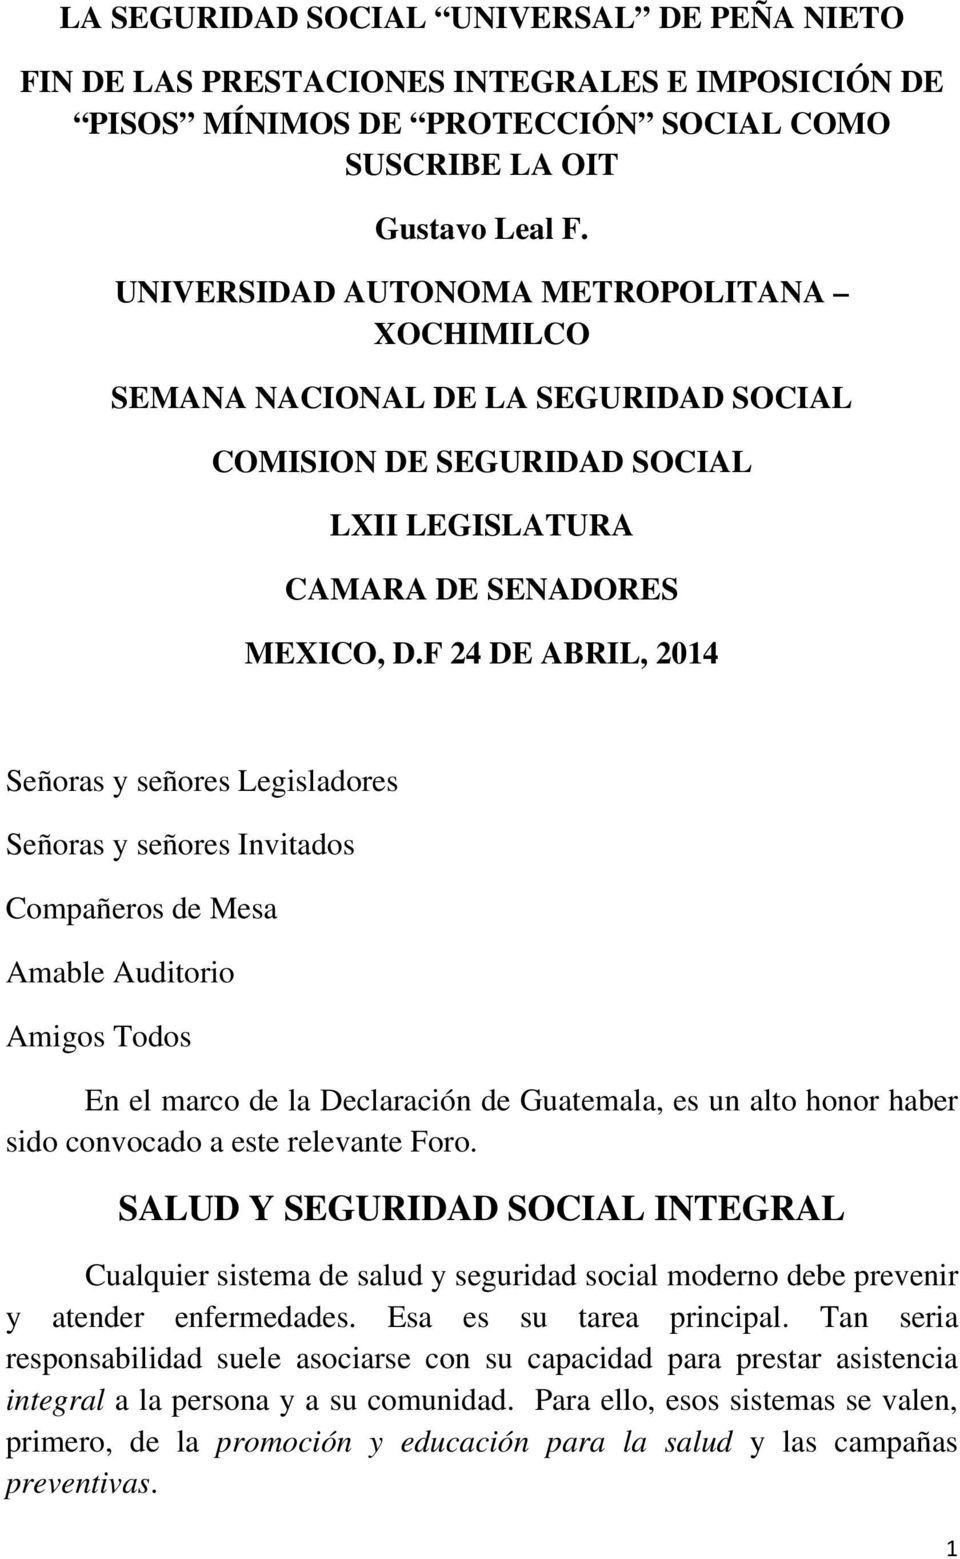 F 24 DE ABRIL, 2014 Señoras y señores Legisladores Señoras y señores Invitados Compañeros de Mesa Amable Auditorio Amigos Todos En el marco de la Declaración de Guatemala, es un alto honor haber sido